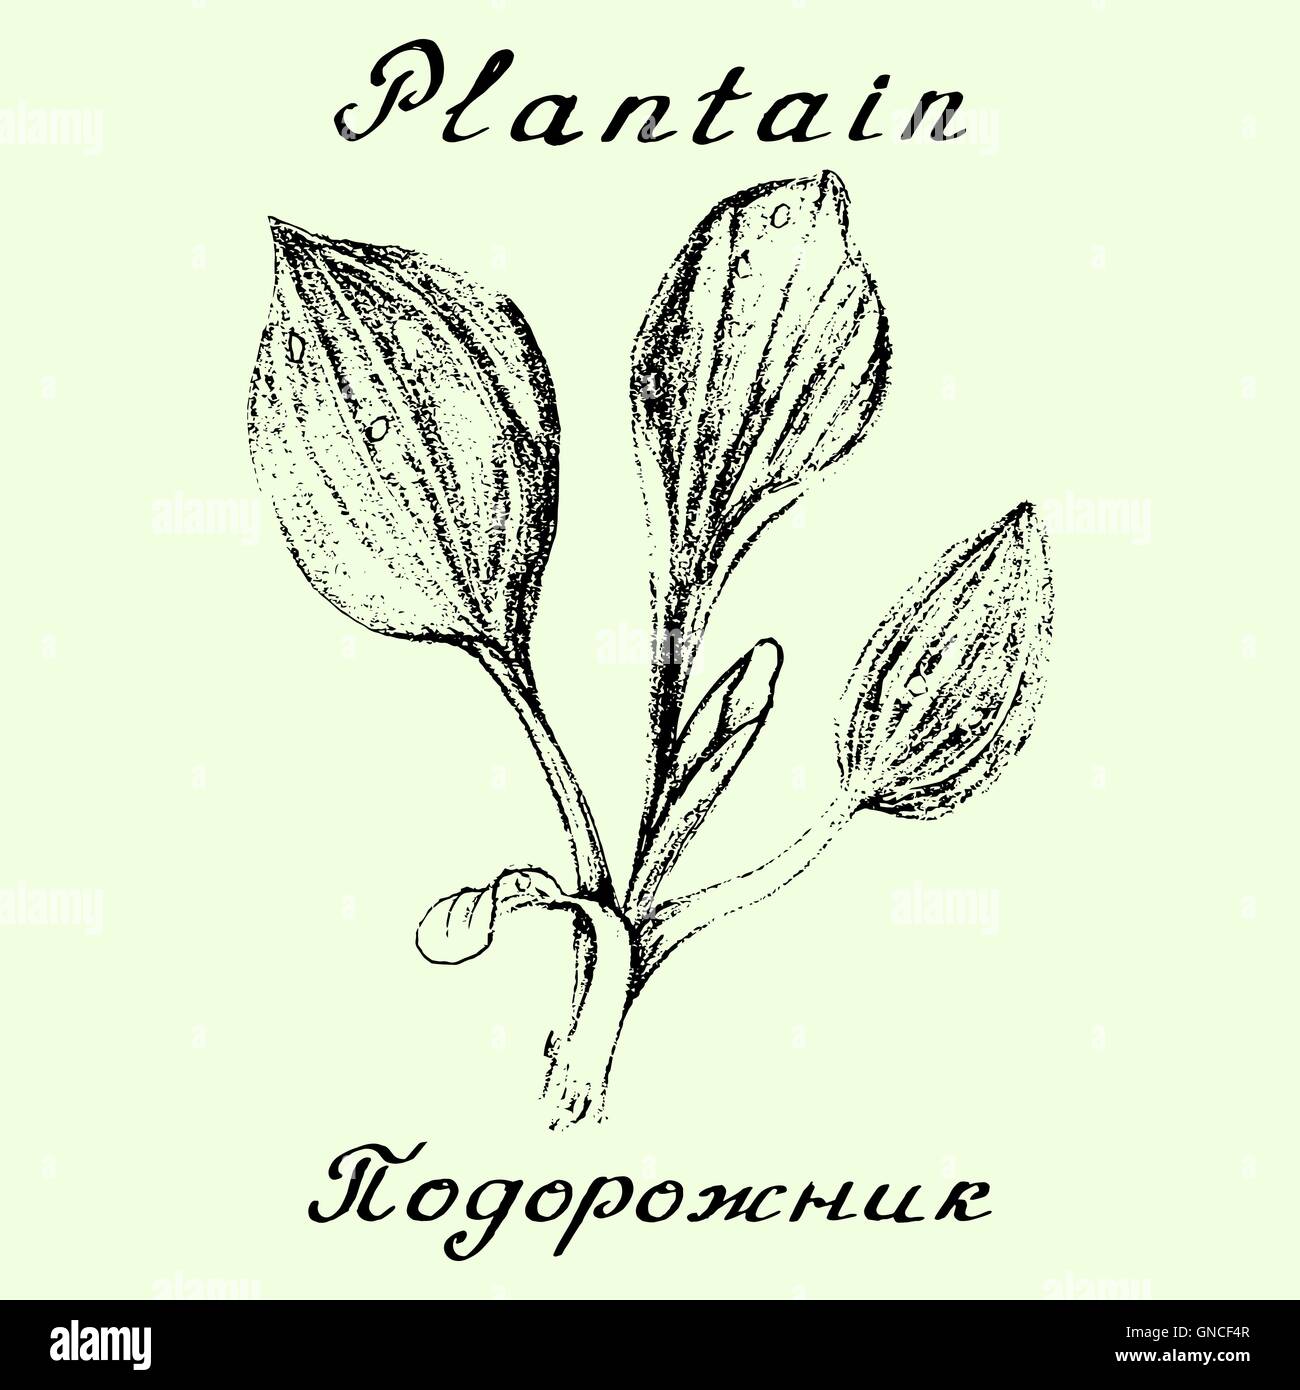 Le plantain. Dessin au crayon à la main et le lettrage Illustration de Vecteur